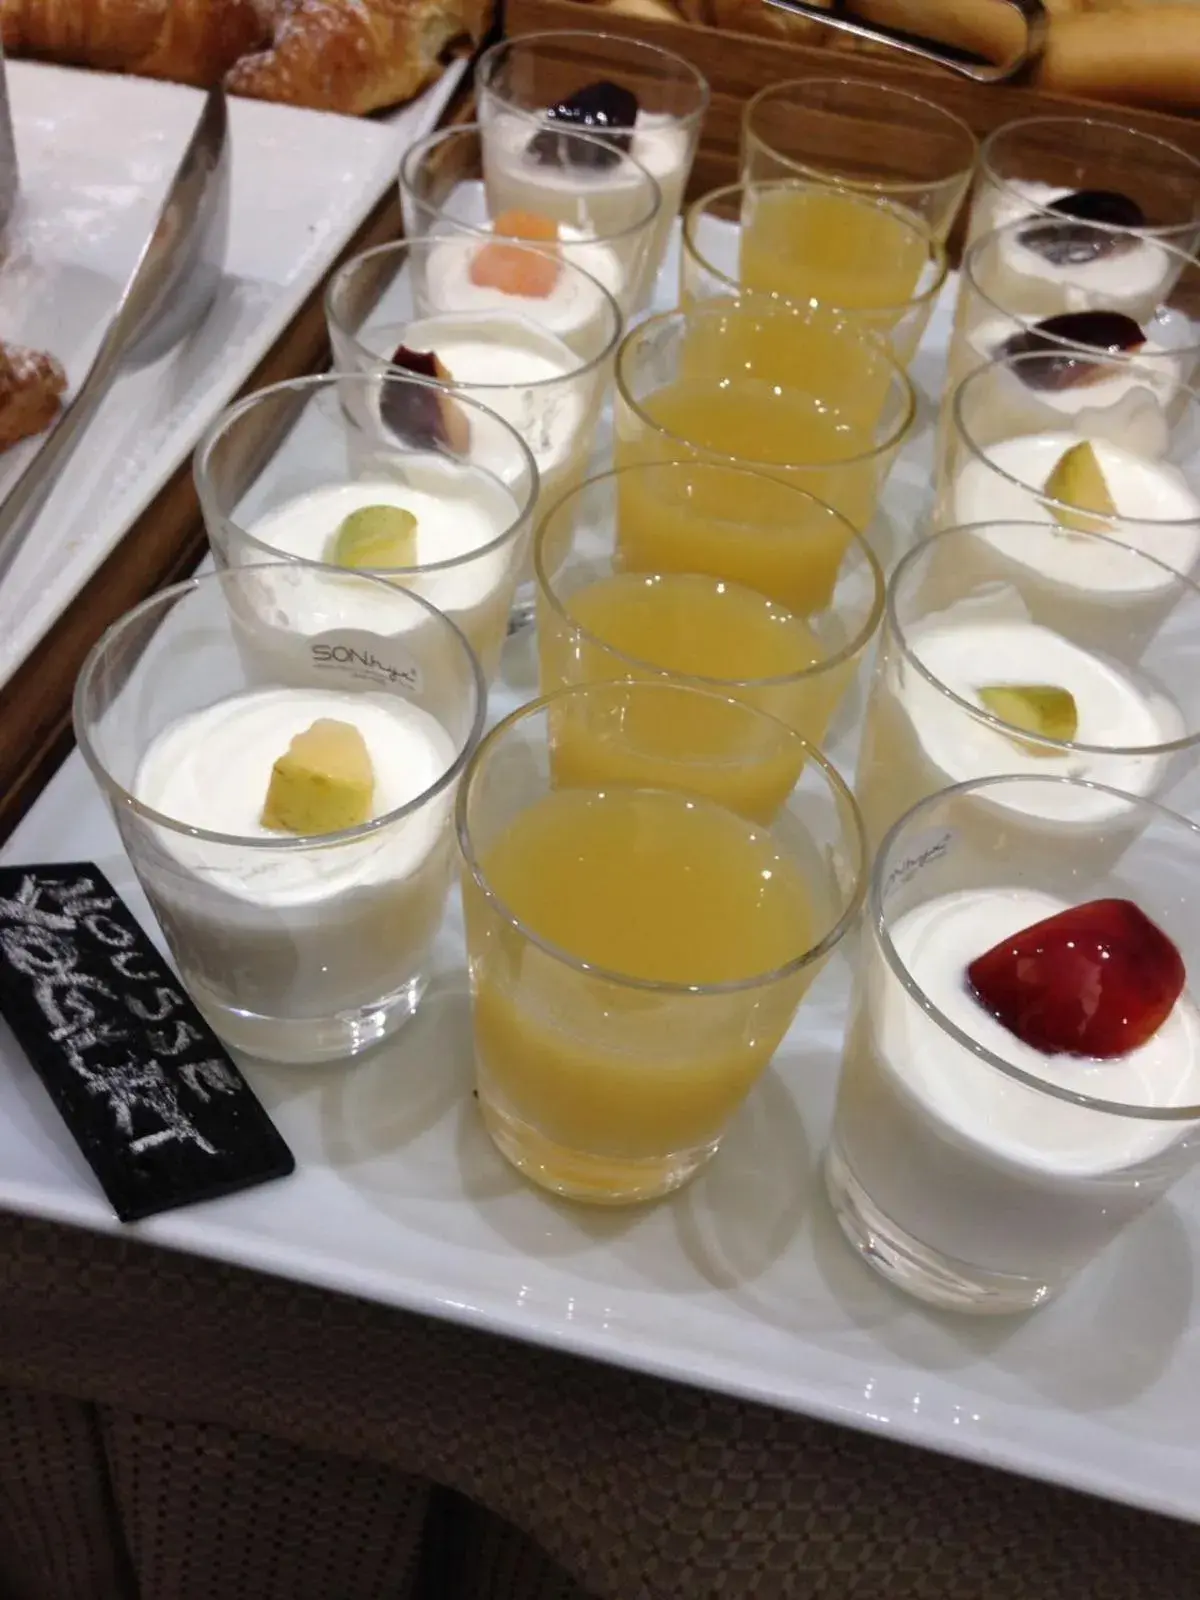 Buffet breakfast in Hotel Astoria